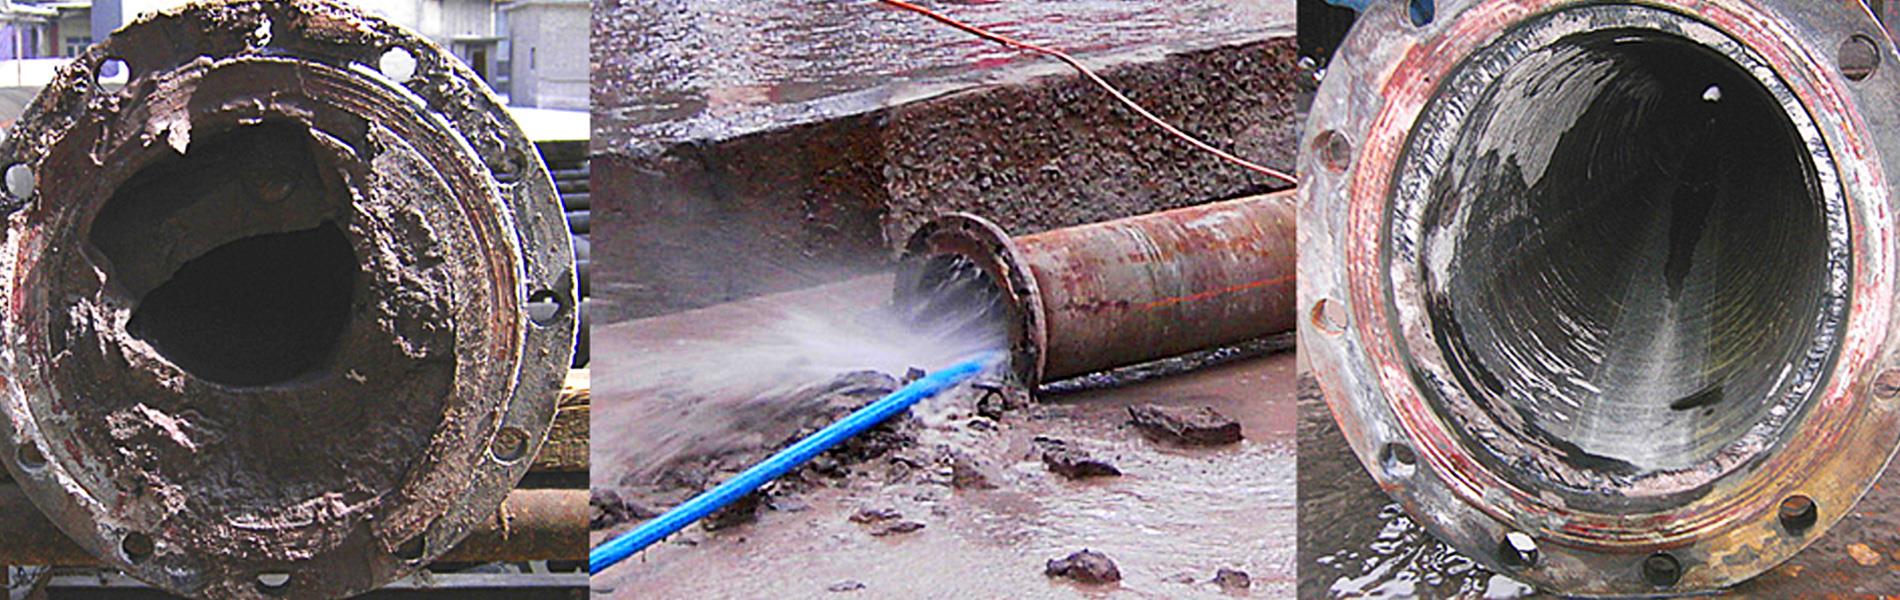 limpieza de tuberías en Balaguer desatascos Low Cost